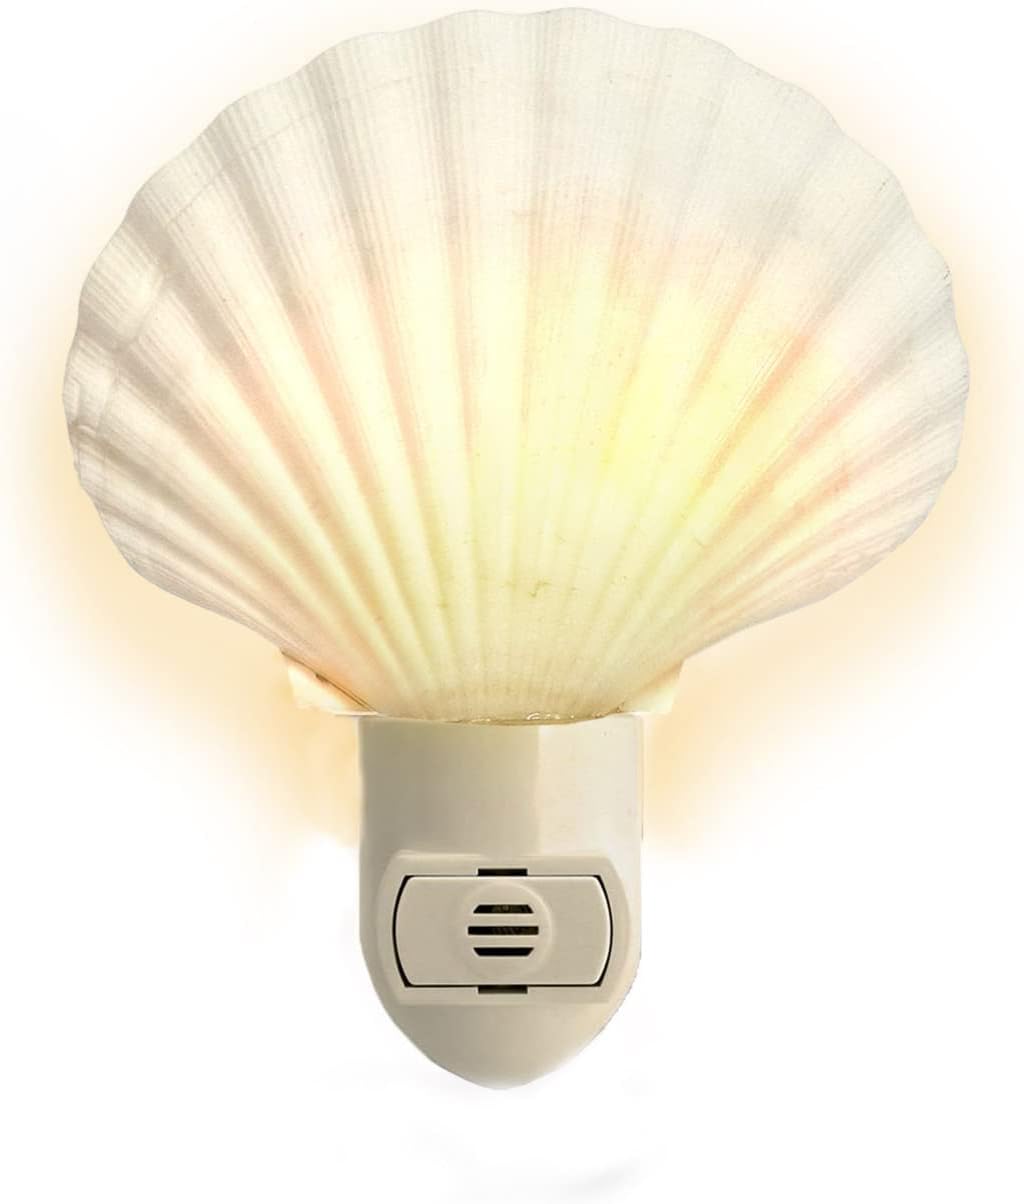 Sea Shell Light Auto Seashell Night Light 1 pc White Clam Sea Shell Night Light Shell Plug in Beach Night Irish Deep Light Plug in